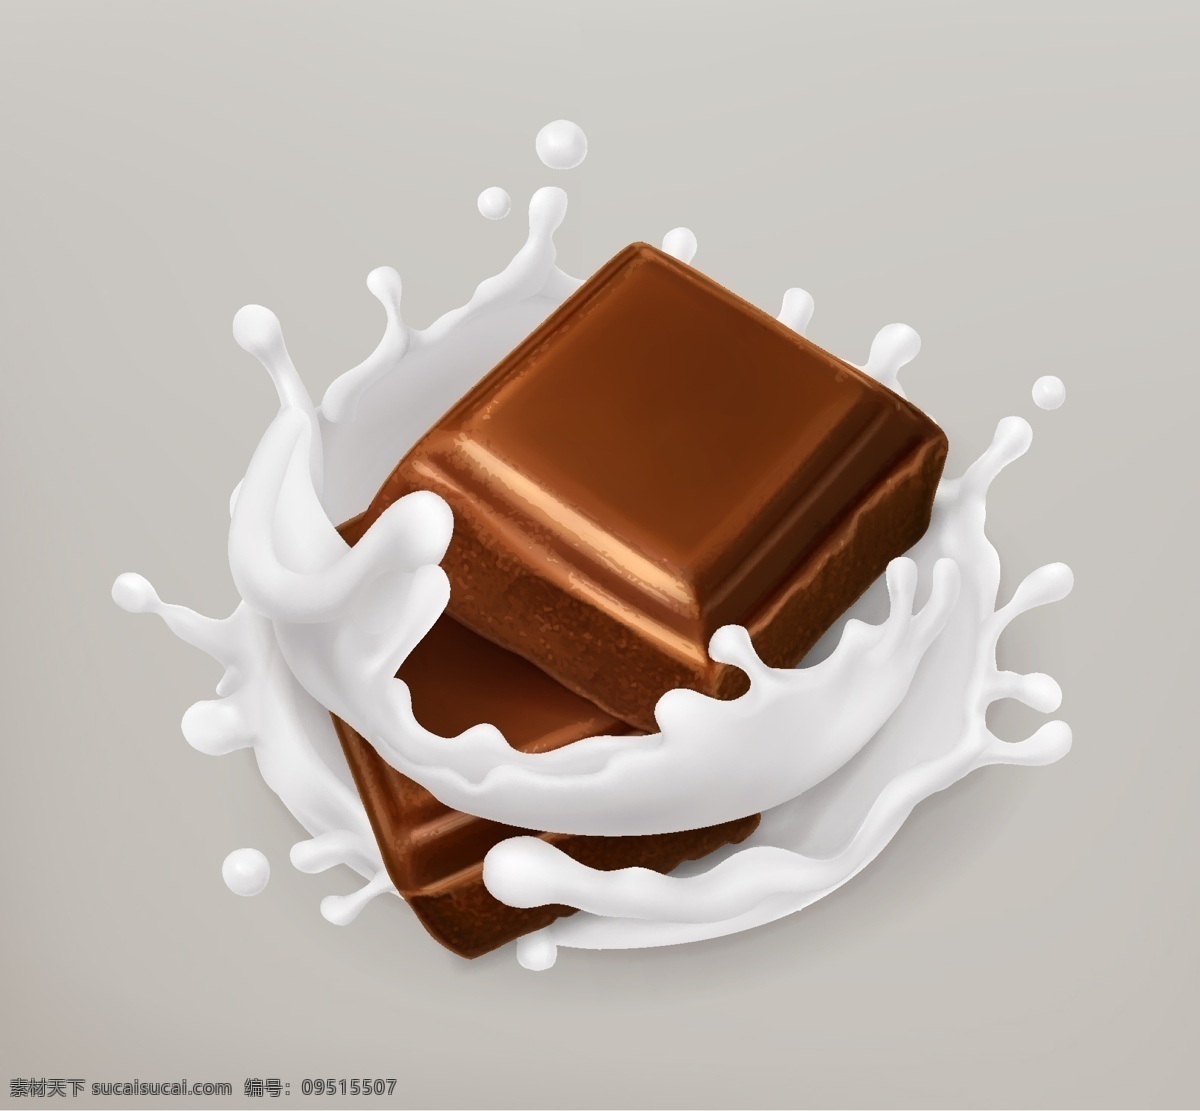 巧克力 牛奶 矢量 水果牛奶矢量 美食 糖果 背景 食品 食物 饮料 广告设计素材